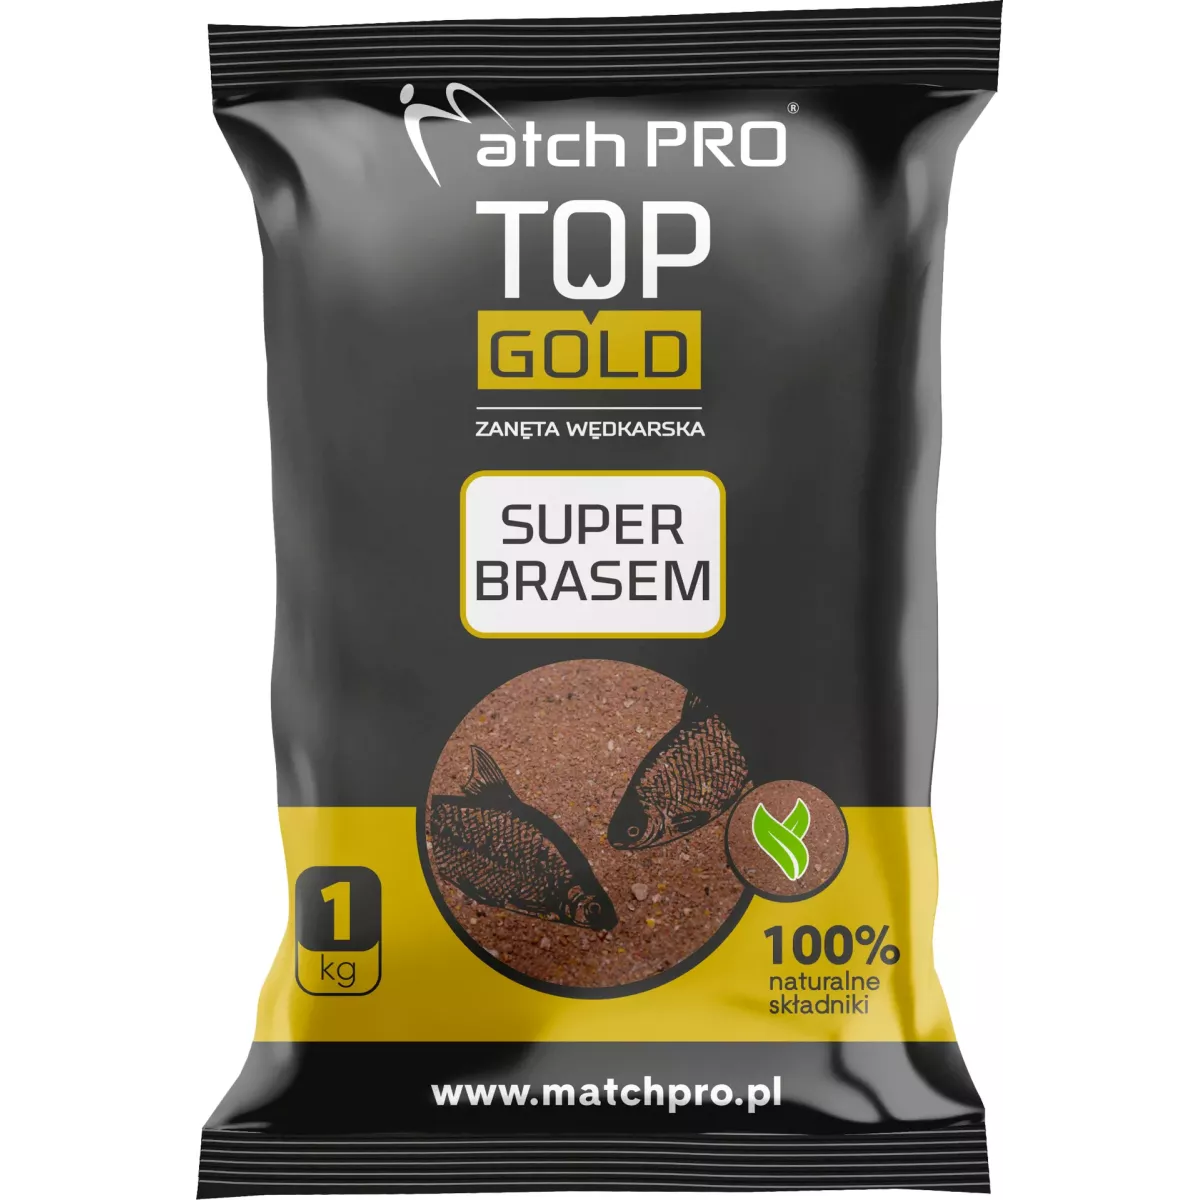 Zanęta MatchPro Top Gold 1kg - SUPER BRASEM